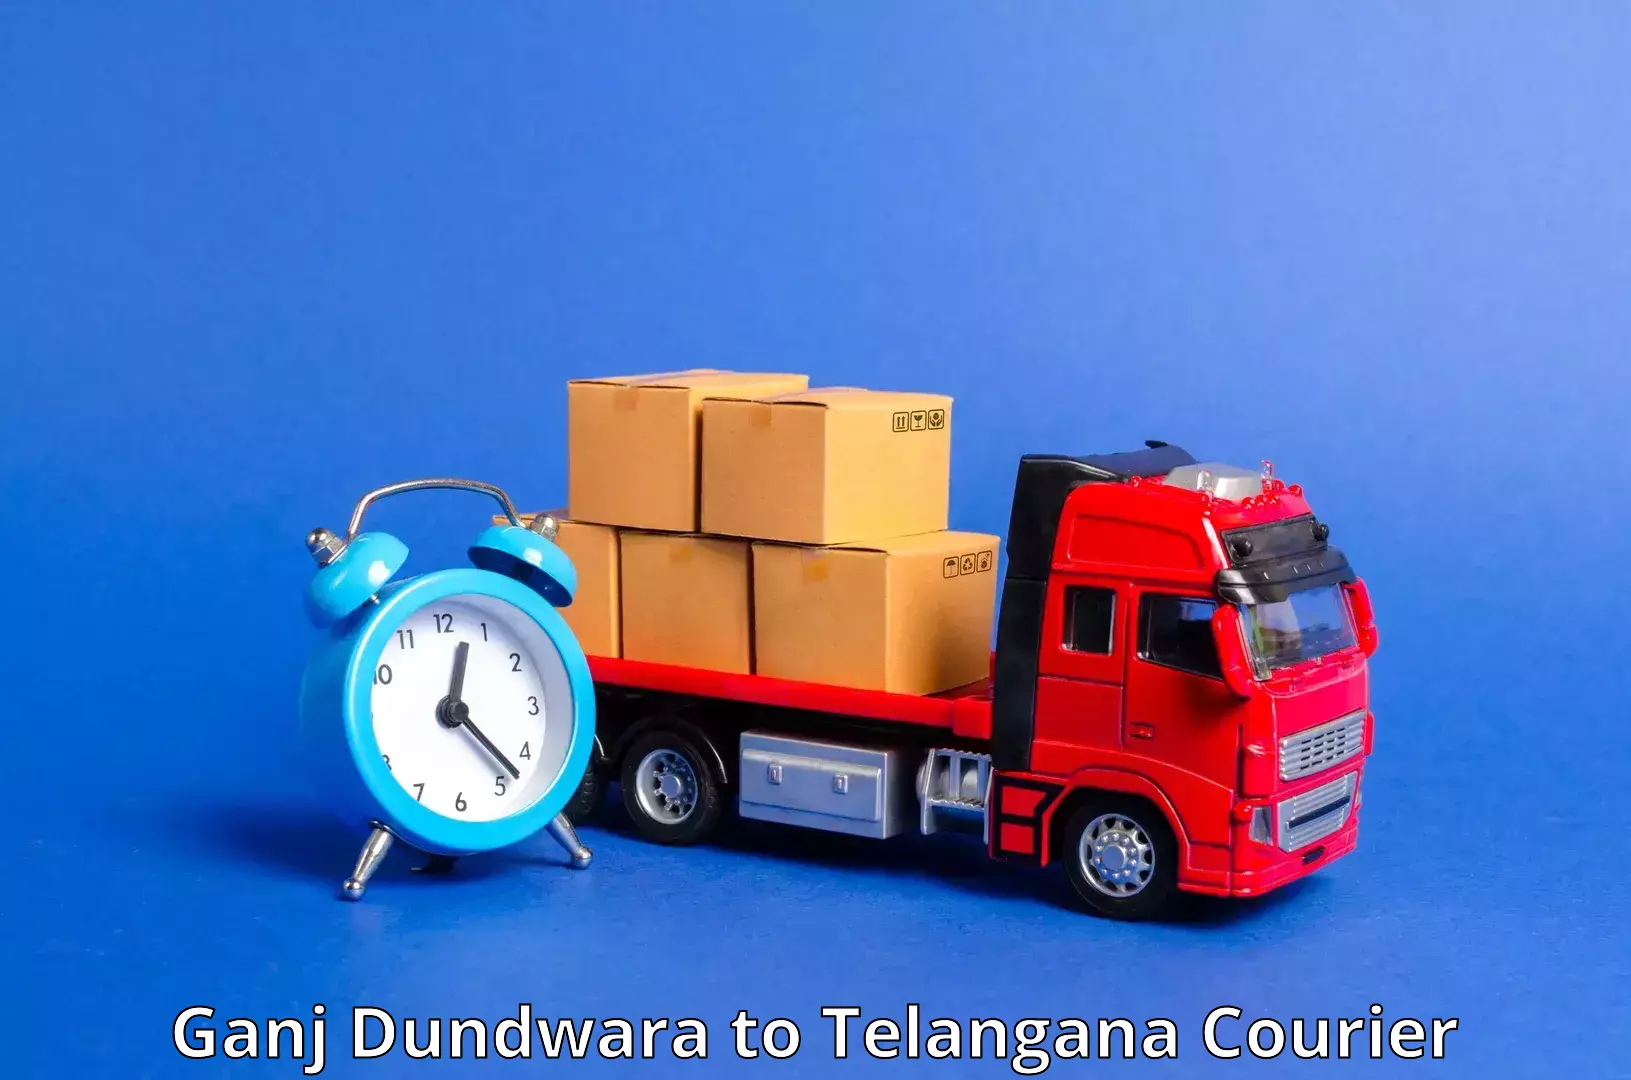 Global freight services Ganj Dundwara to Gangadhara